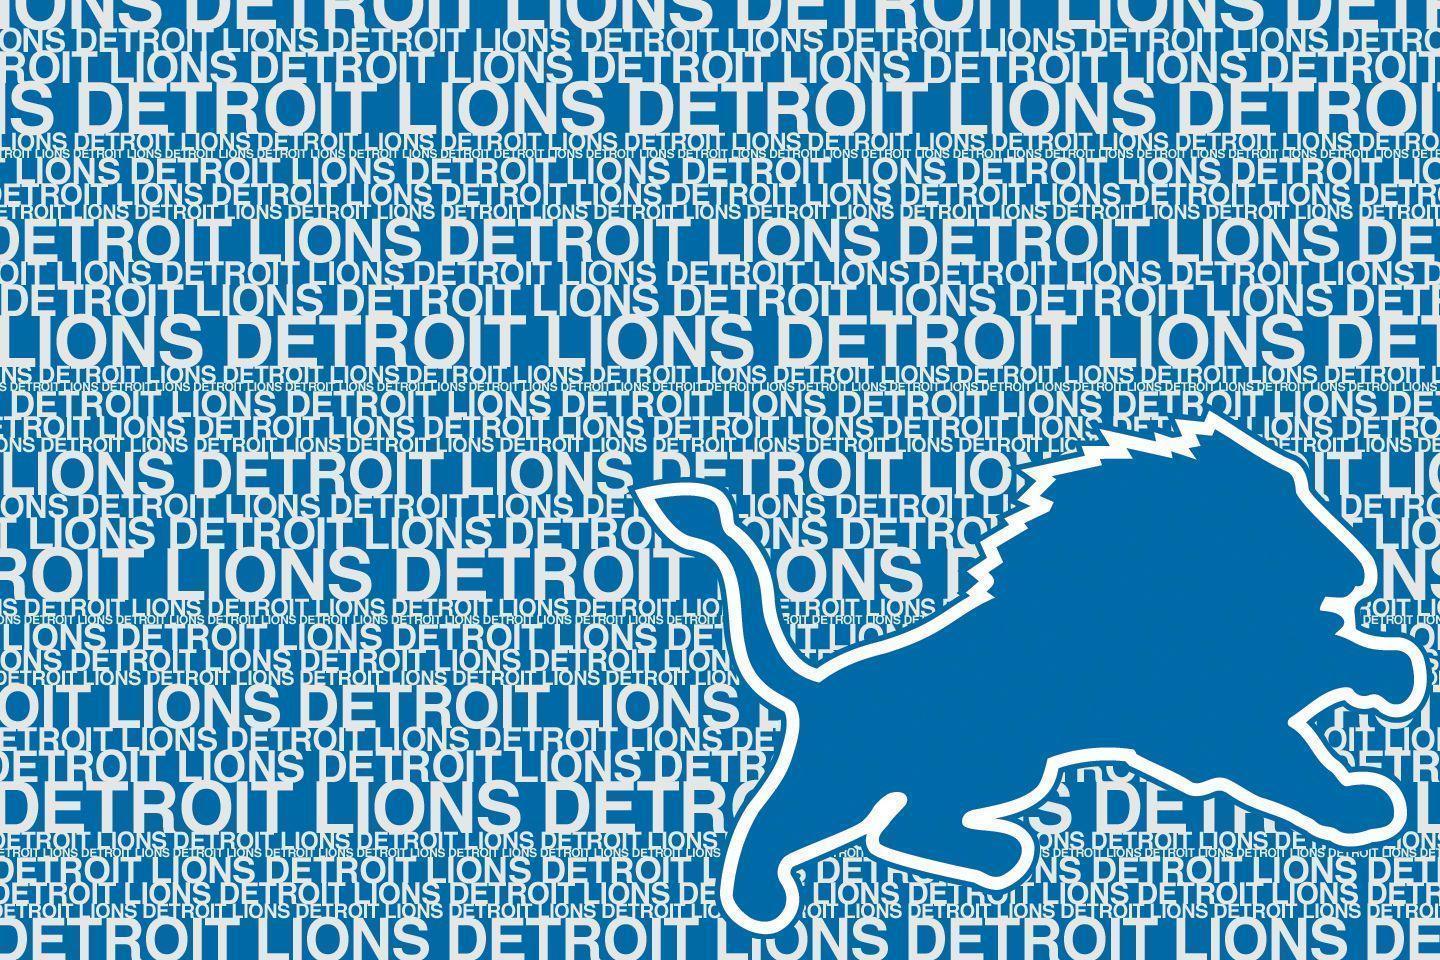 Detroit Lions Wallpaper Archives.com